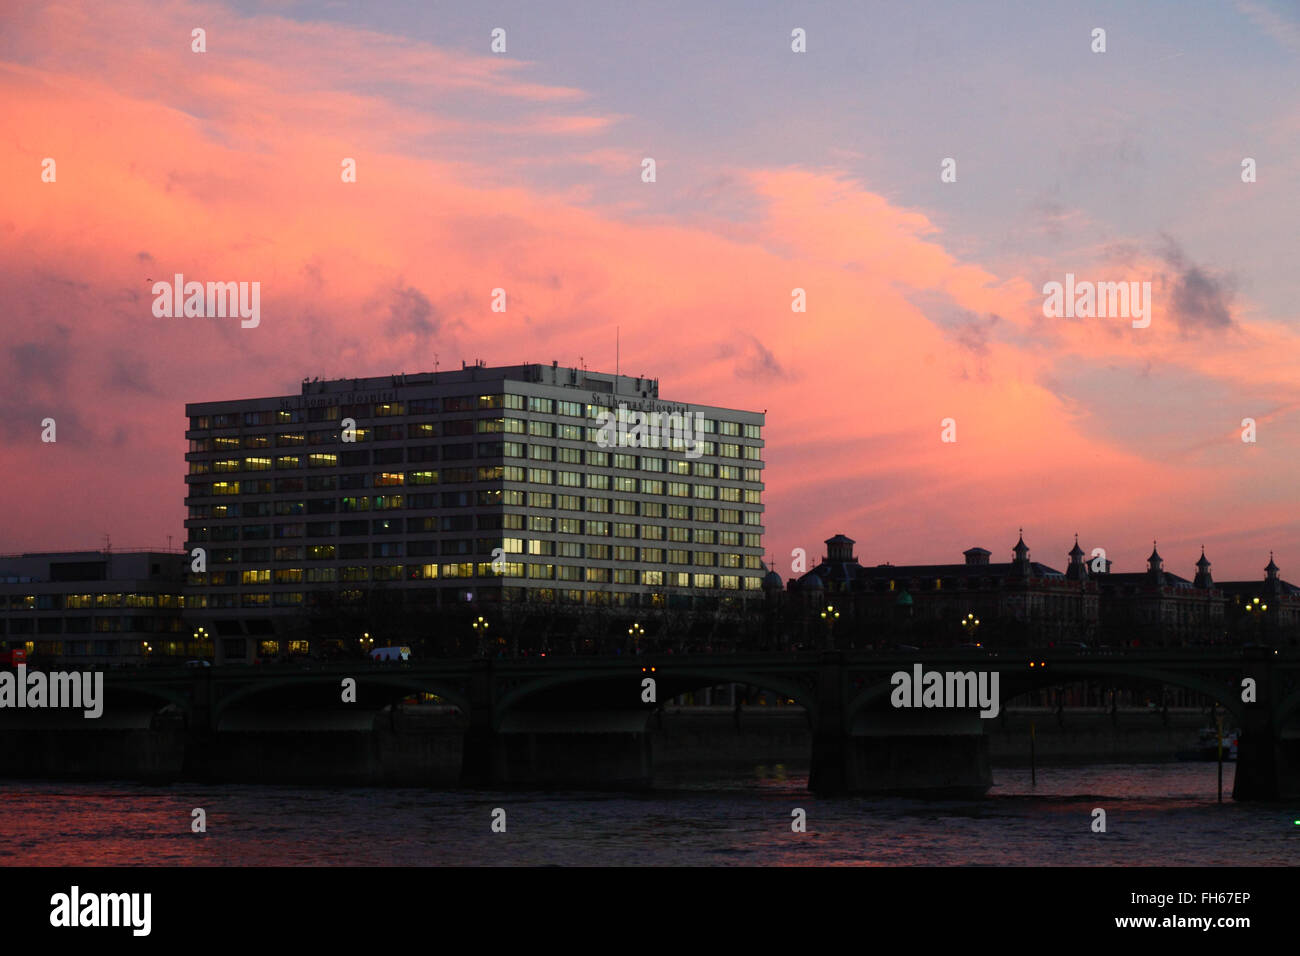 St Thomas' Hospital sur la rive sud de la Tamise au coucher du soleil, Lambeth, London, England, UK Banque D'Images